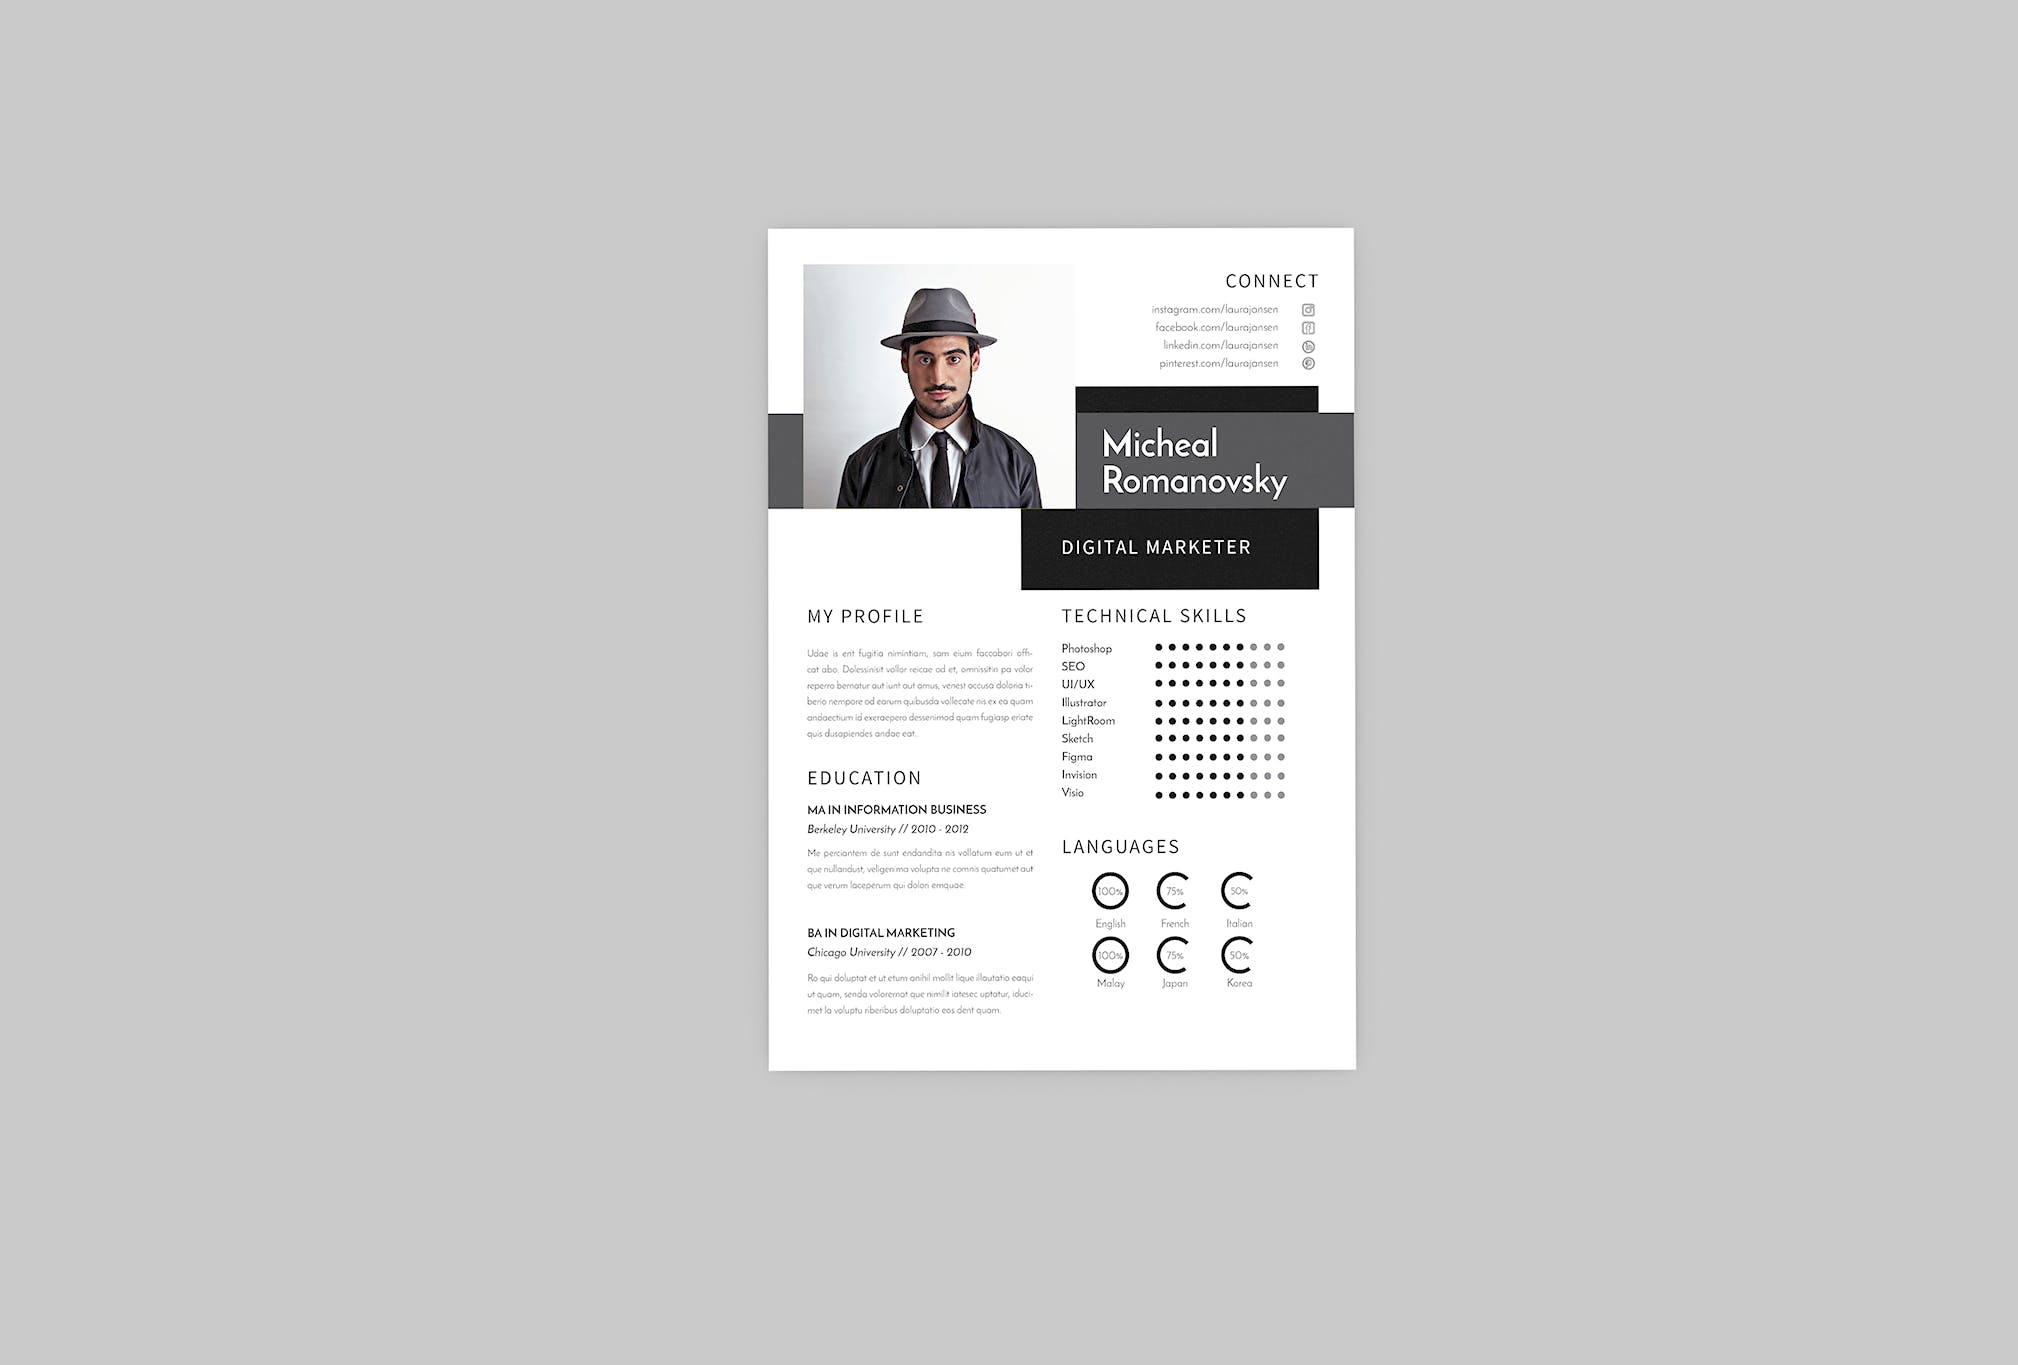 数字营销经理第一素材精选简历模板 Micheal DIgital Resume Designer插图(2)